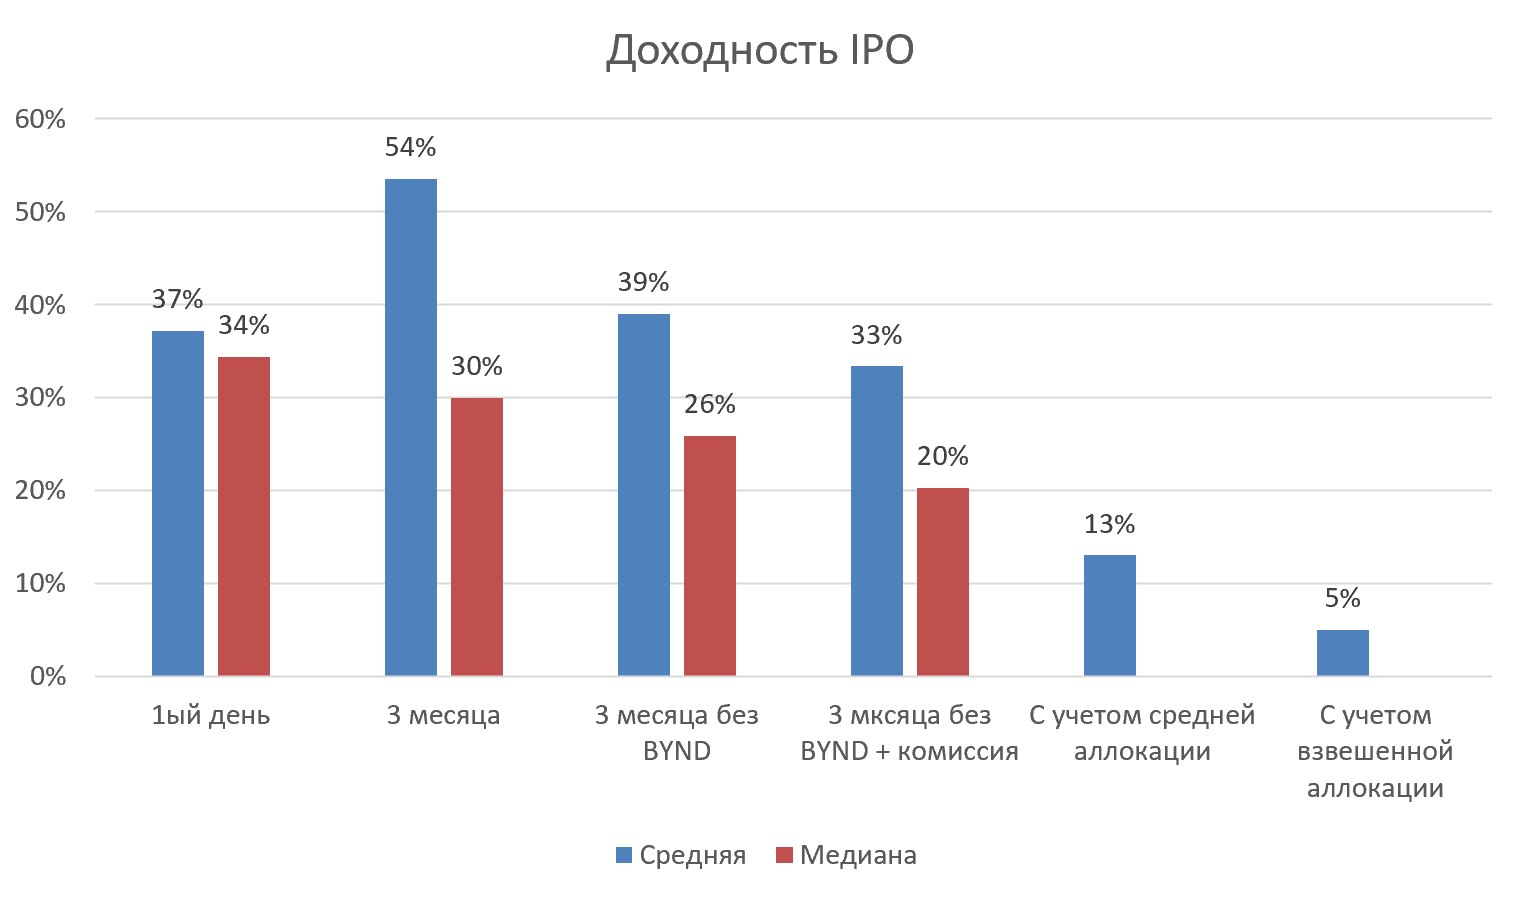 Стоит ли участвовать в ipo европлан. Доходность IPO по годам. Статистика IPO. Статистика доходности компании. Доходность IPO В России.